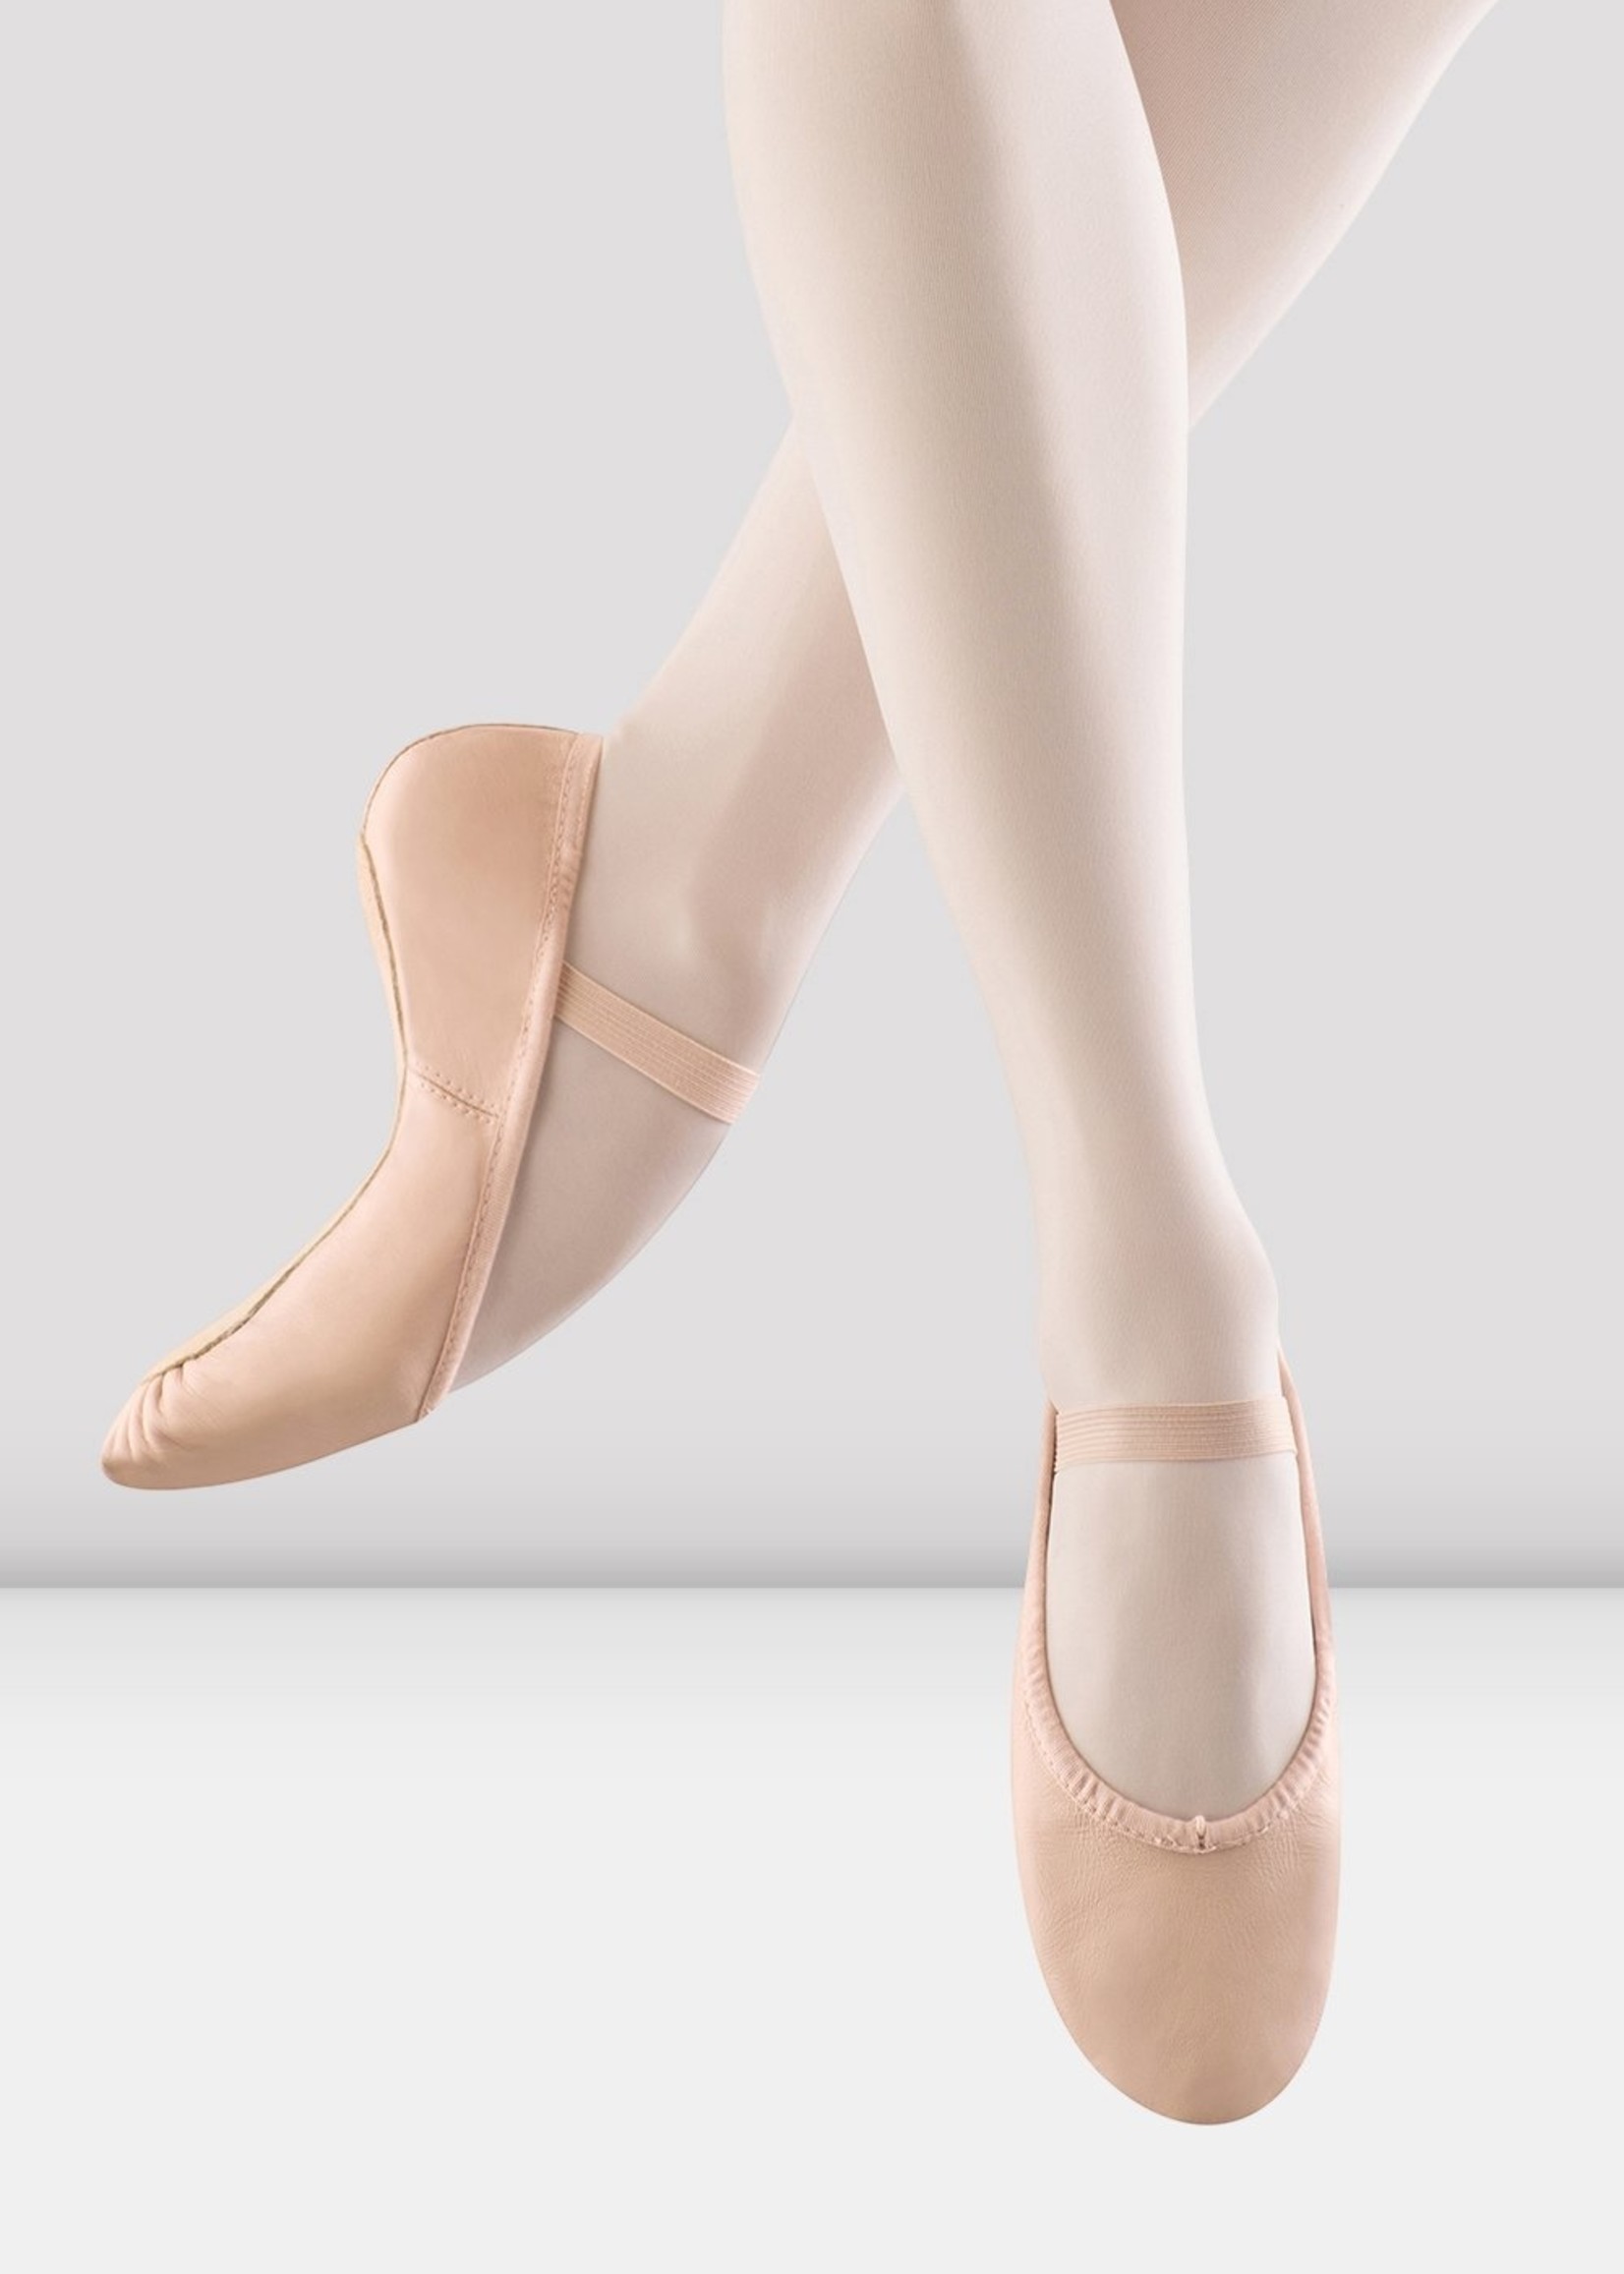 Bloch S0205G -Full Sole Leather Ballet Shoe